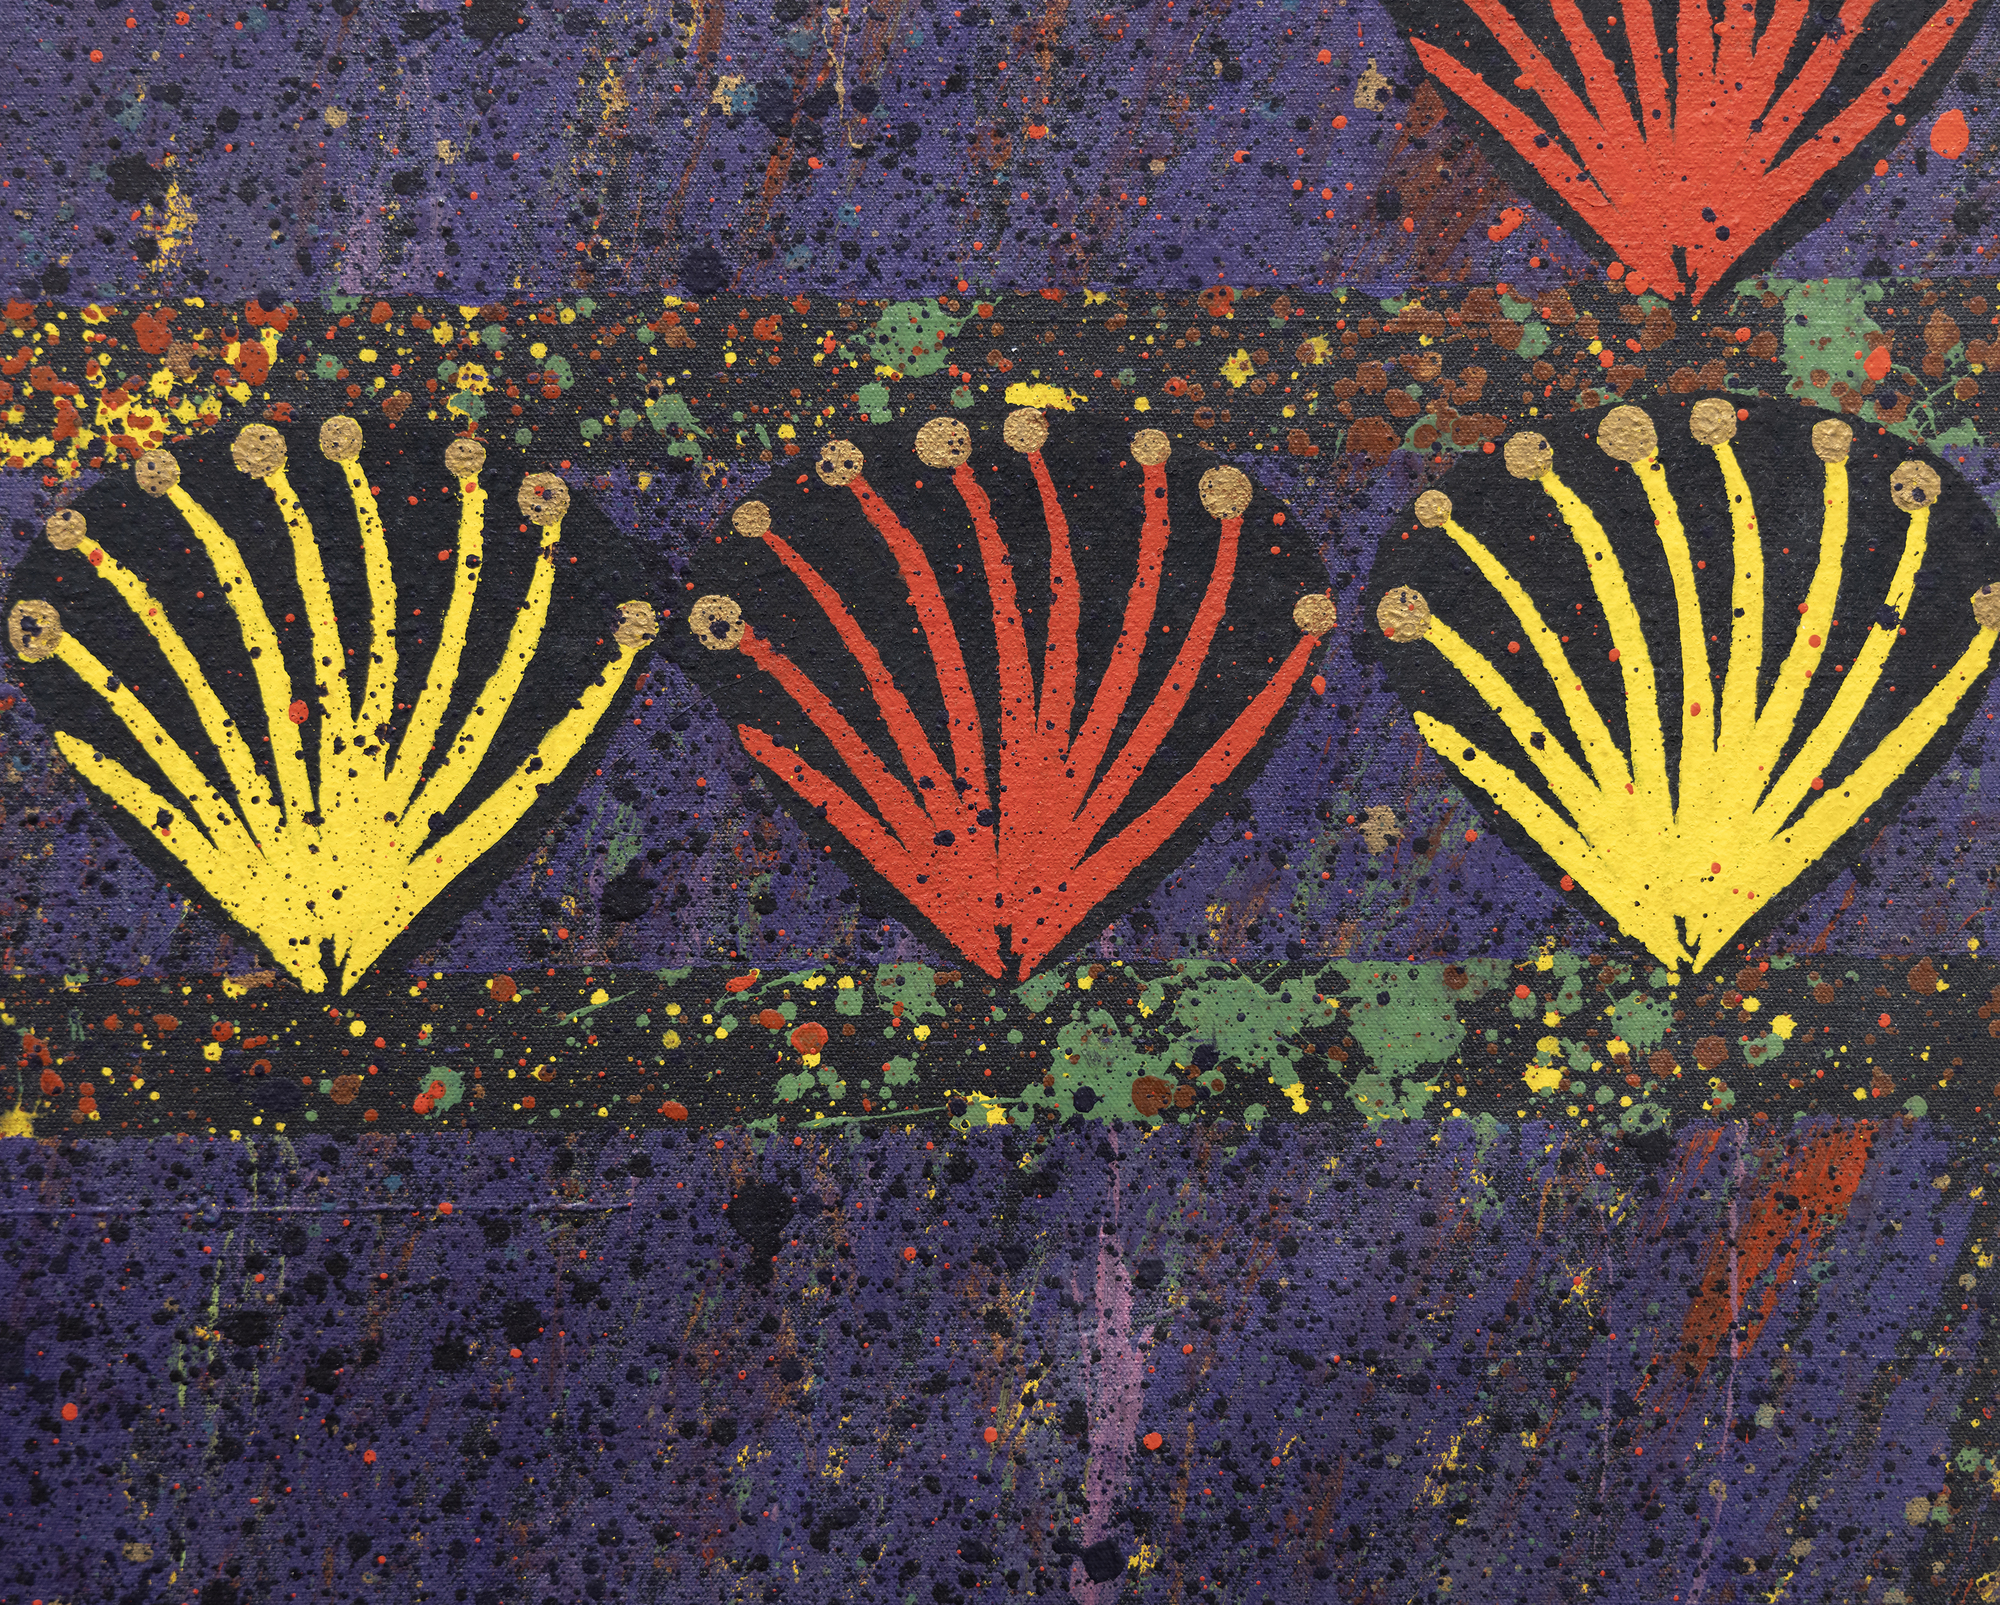 MERION ESTES - Solo Samba - acrylic on canvas - 70 1/4 x 71 1/2 in.